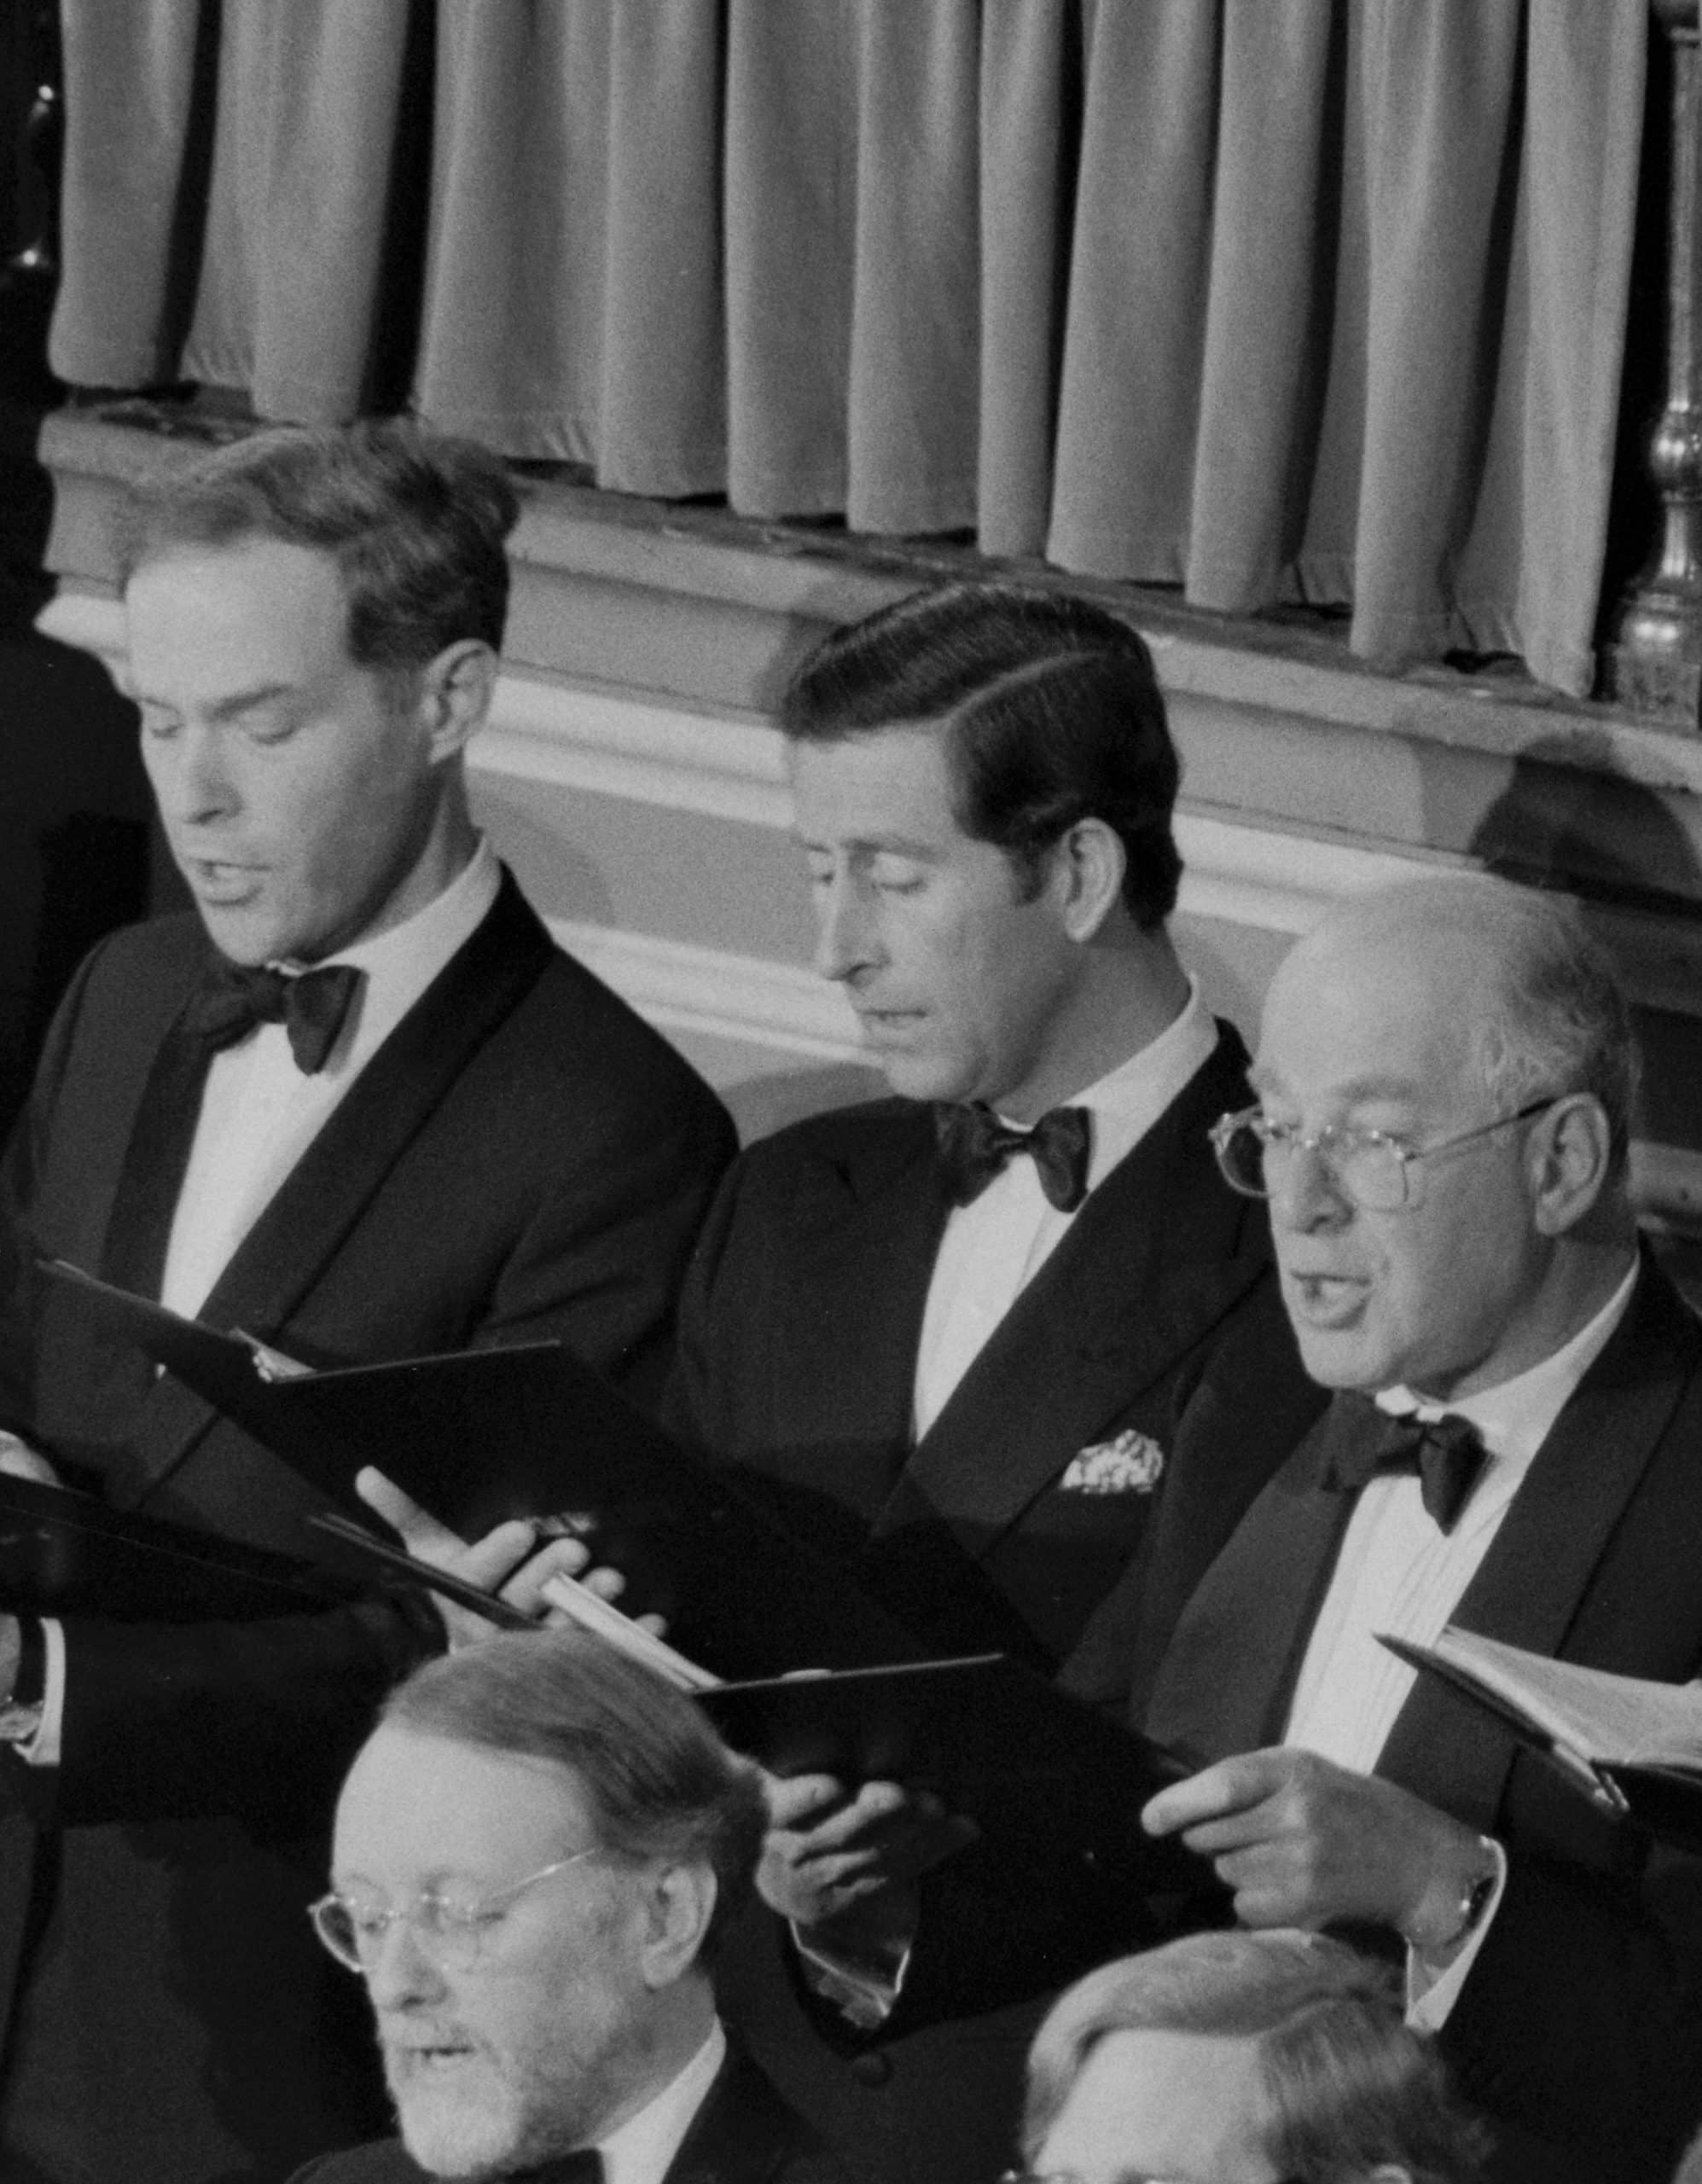 1985: Prince Charles sings in Bach Choir